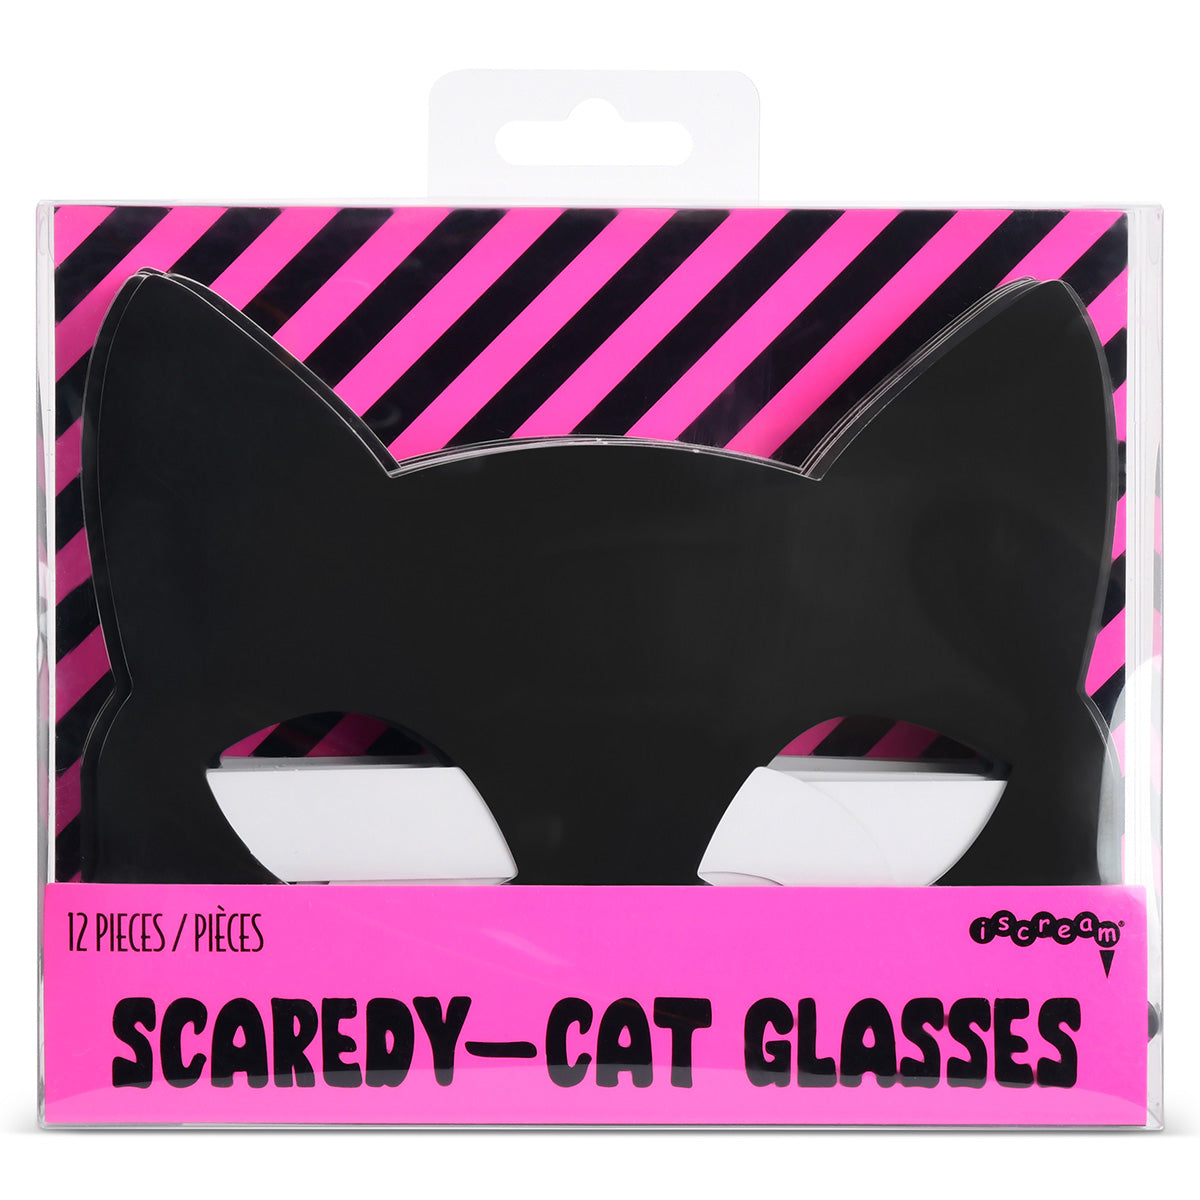 Scaredy Cat Glasses